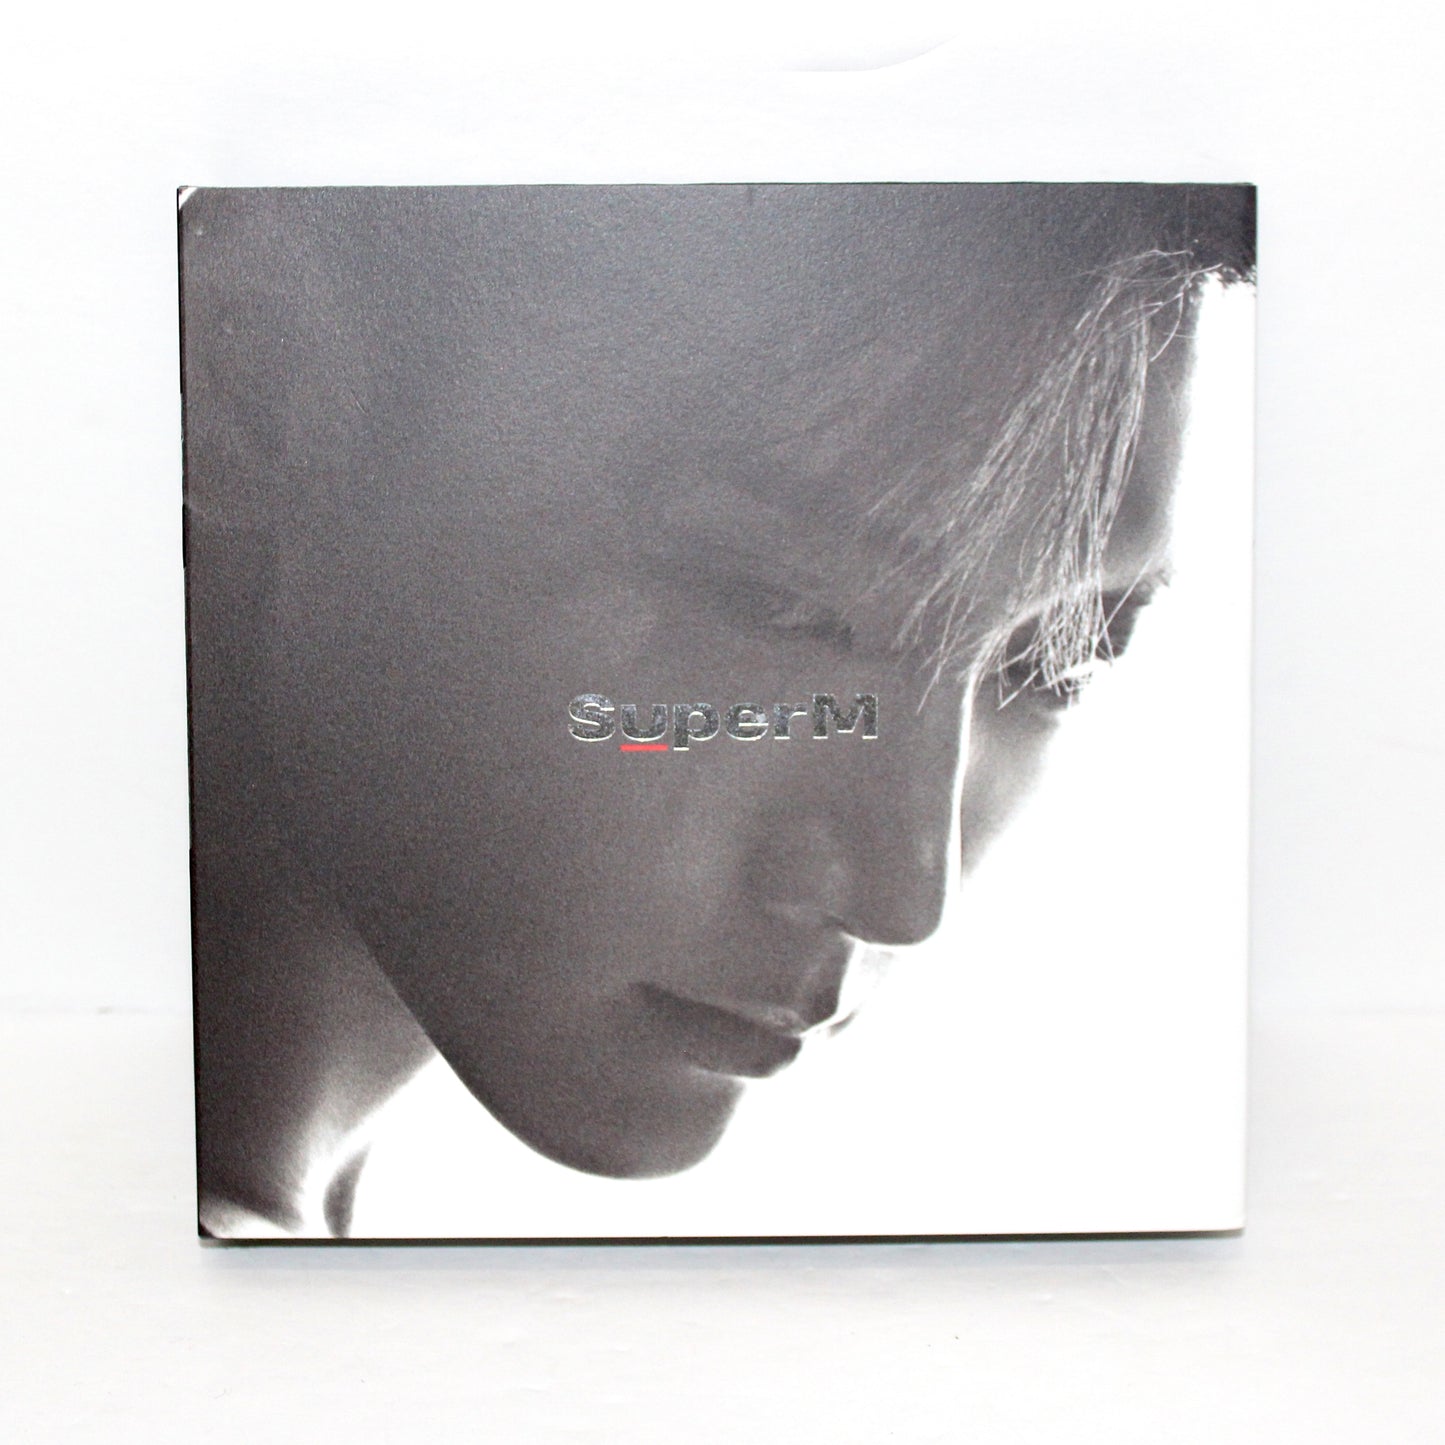 SUPERM 1er mini-album : SuperM | Dix ver.